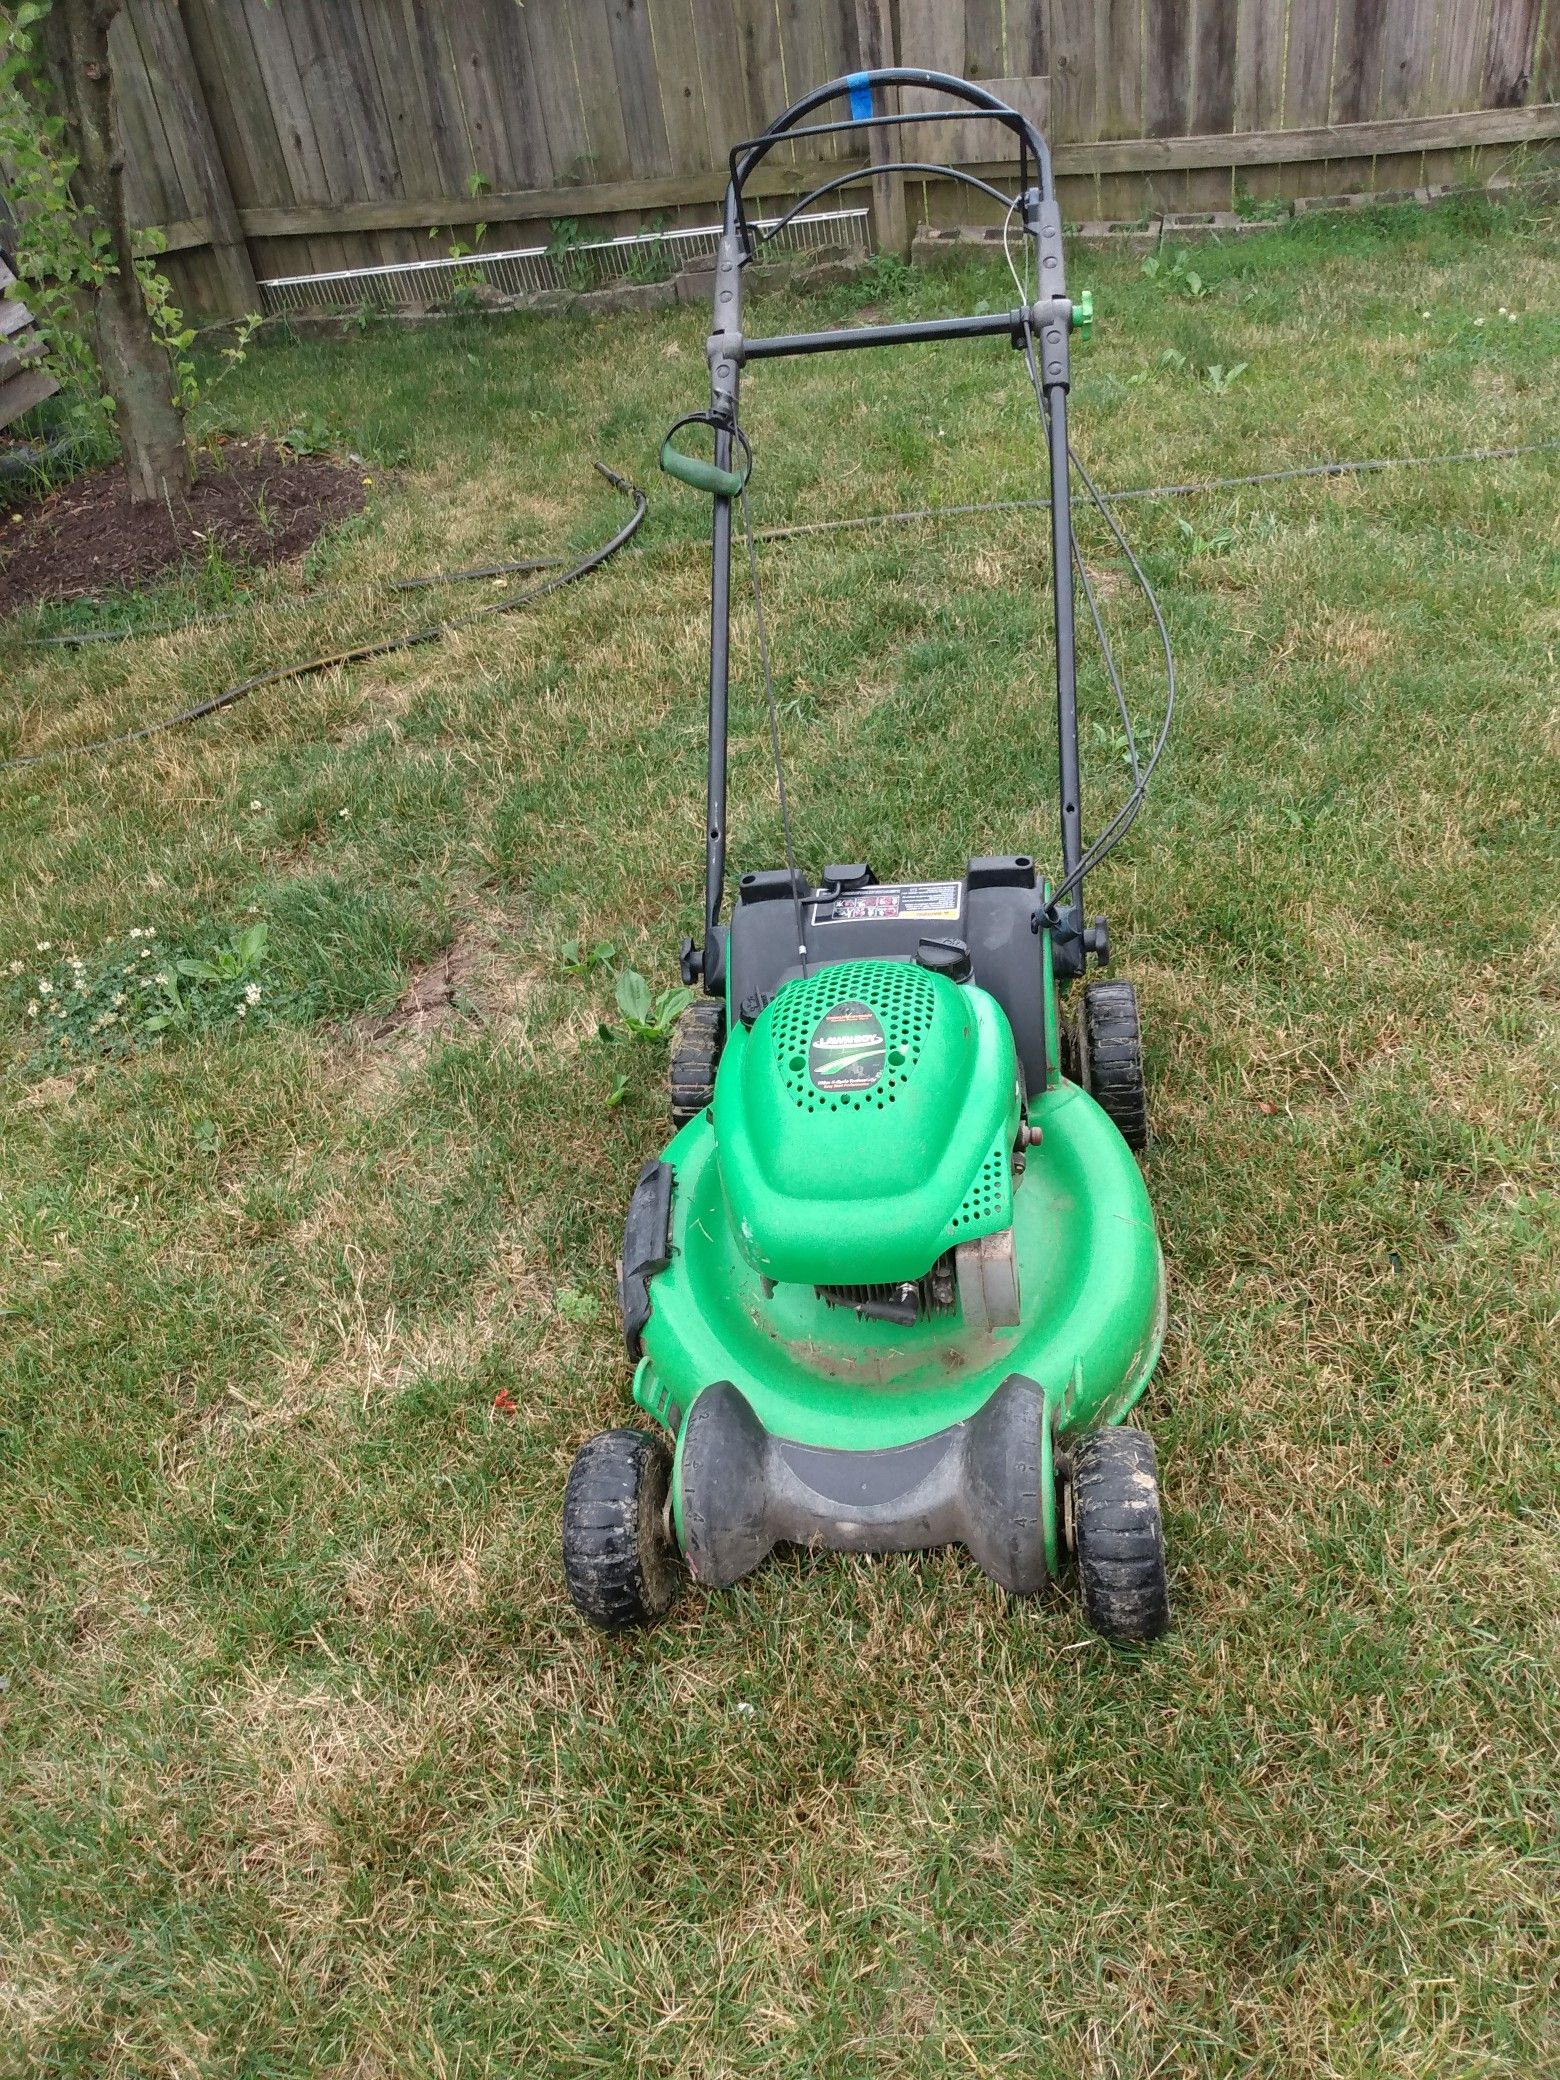 Self propelled lawn mower